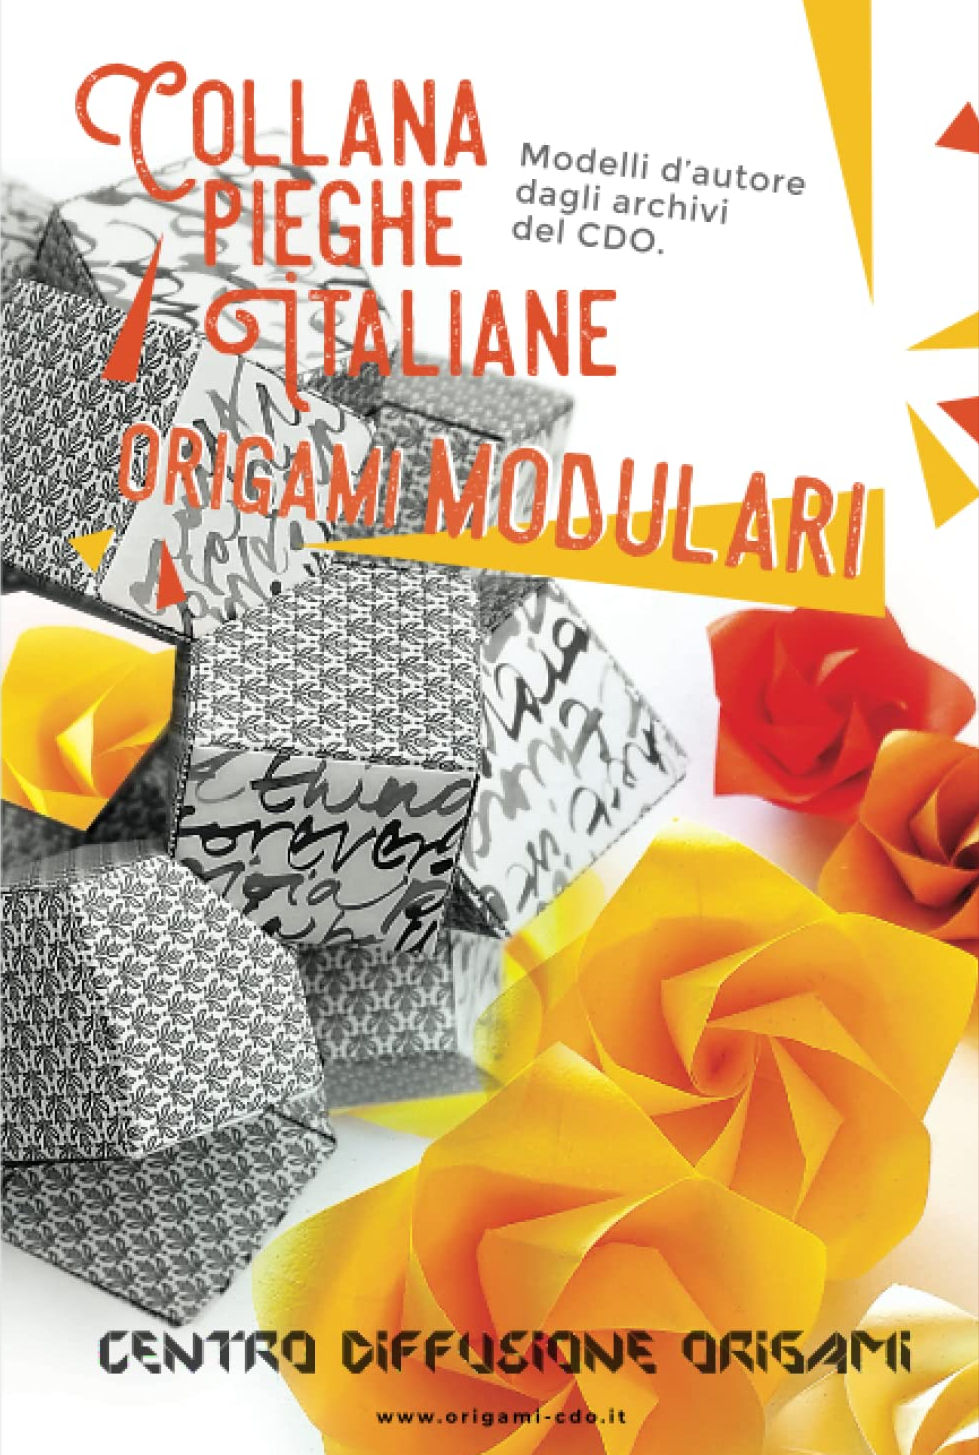 Collana pieghe Italiane - origami MODULARI : page 58.